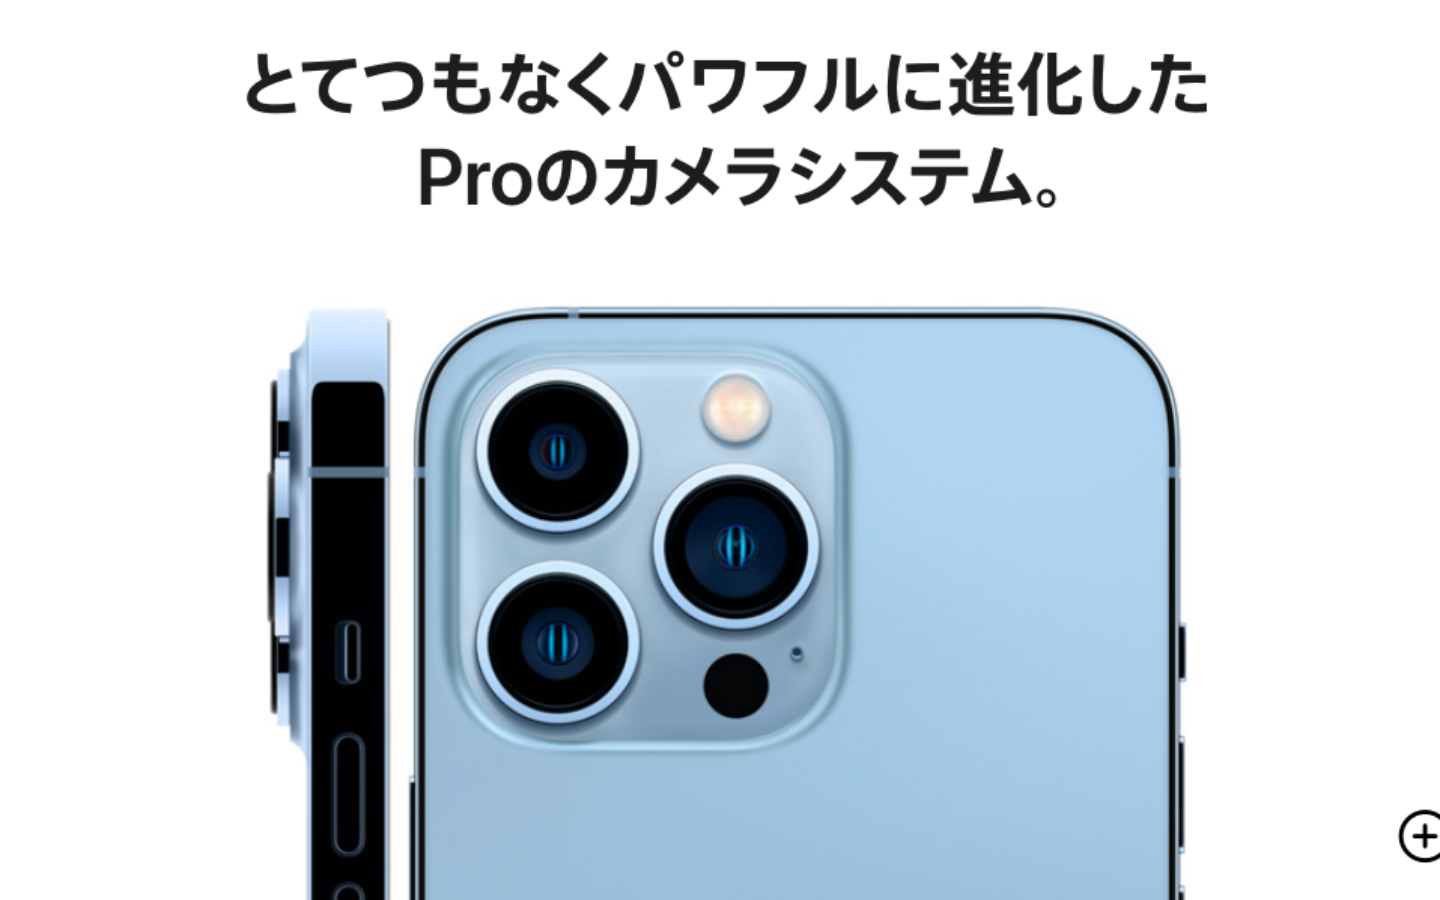 日本 iPhone 二手市場買氣大熱！因應 iPhone 13 漲價，民眾棄新機買二手